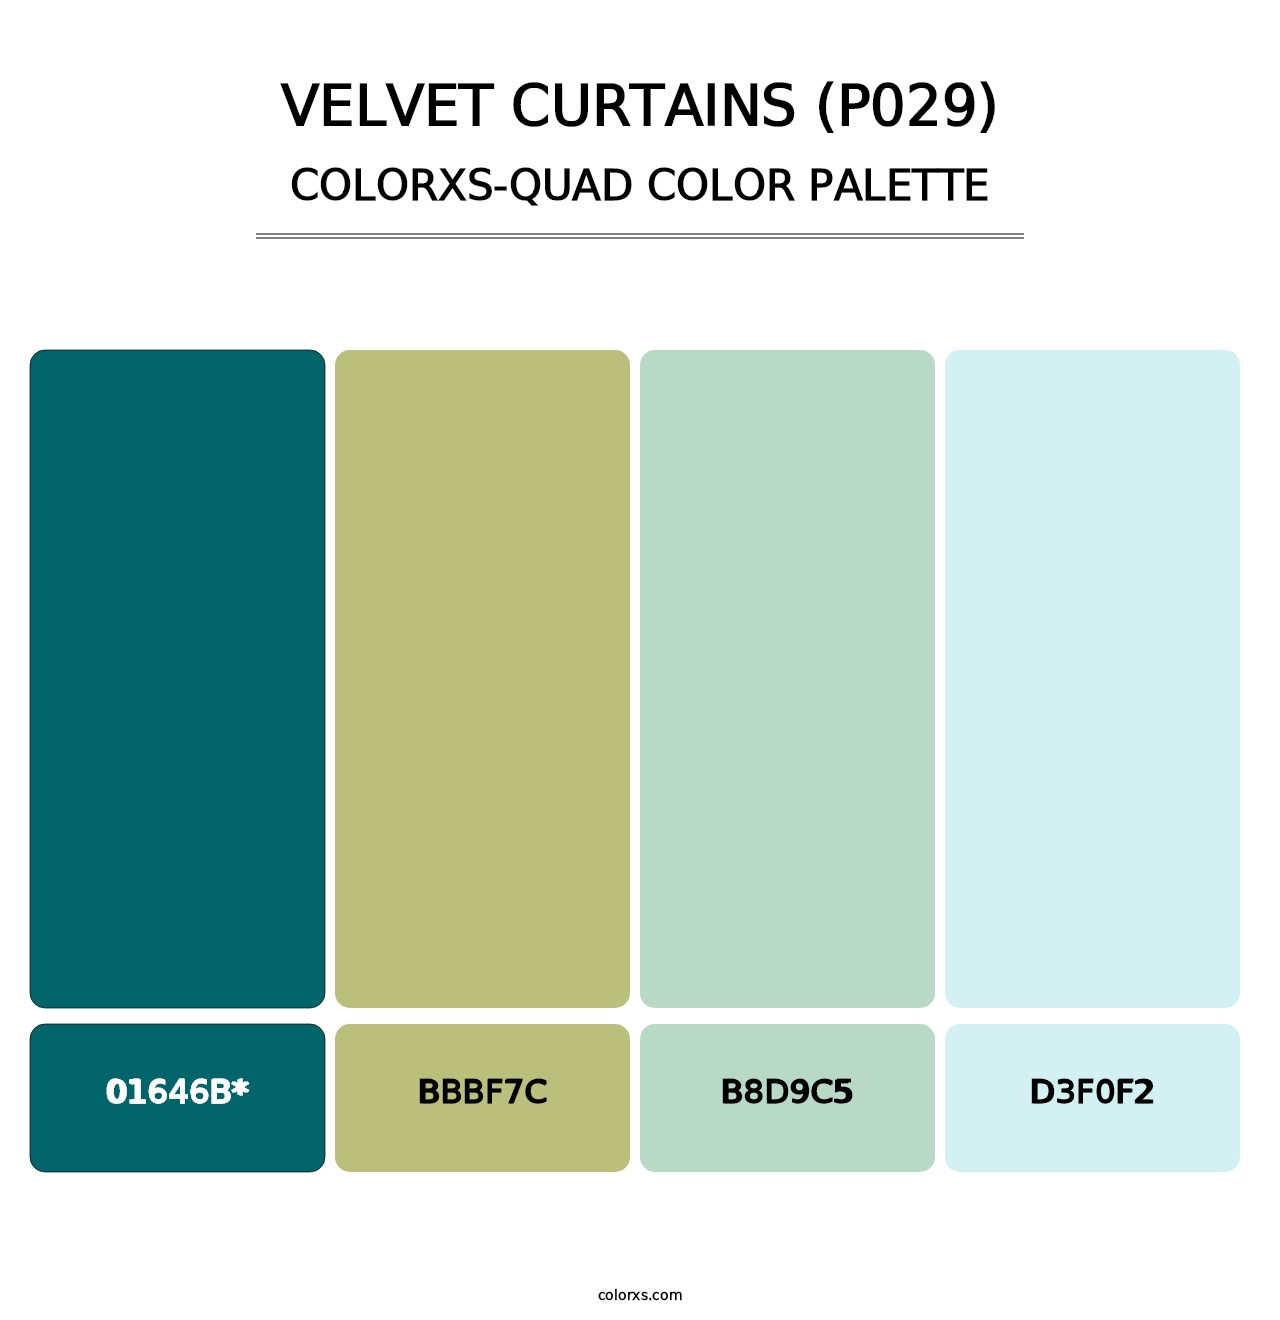 Velvet Curtains (P029) - Colorxs Quad Palette